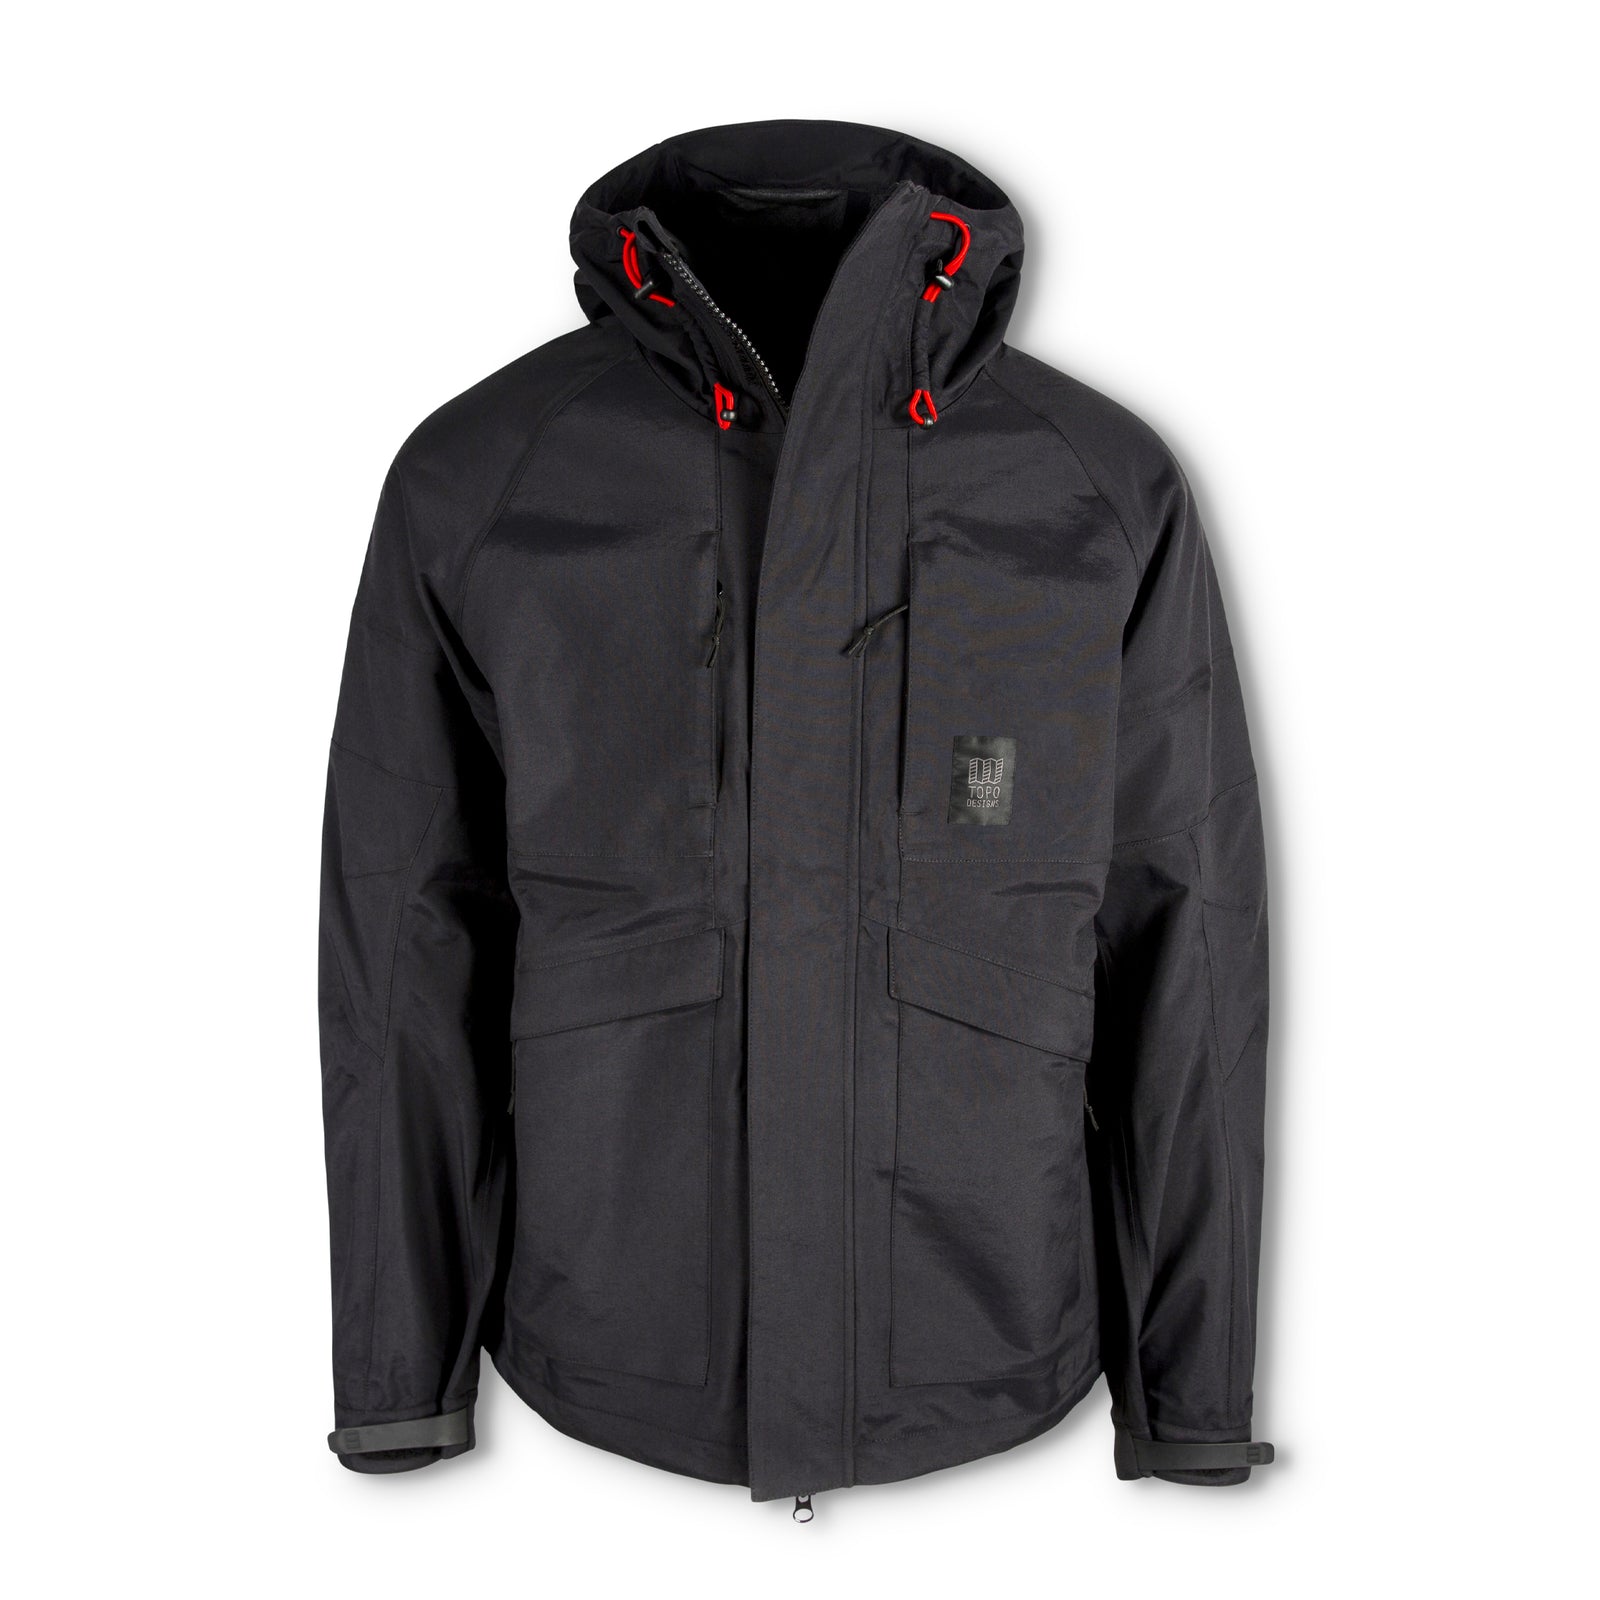 Topo Designs Men's Mountain Parka waterproof shell jacket in "Black".